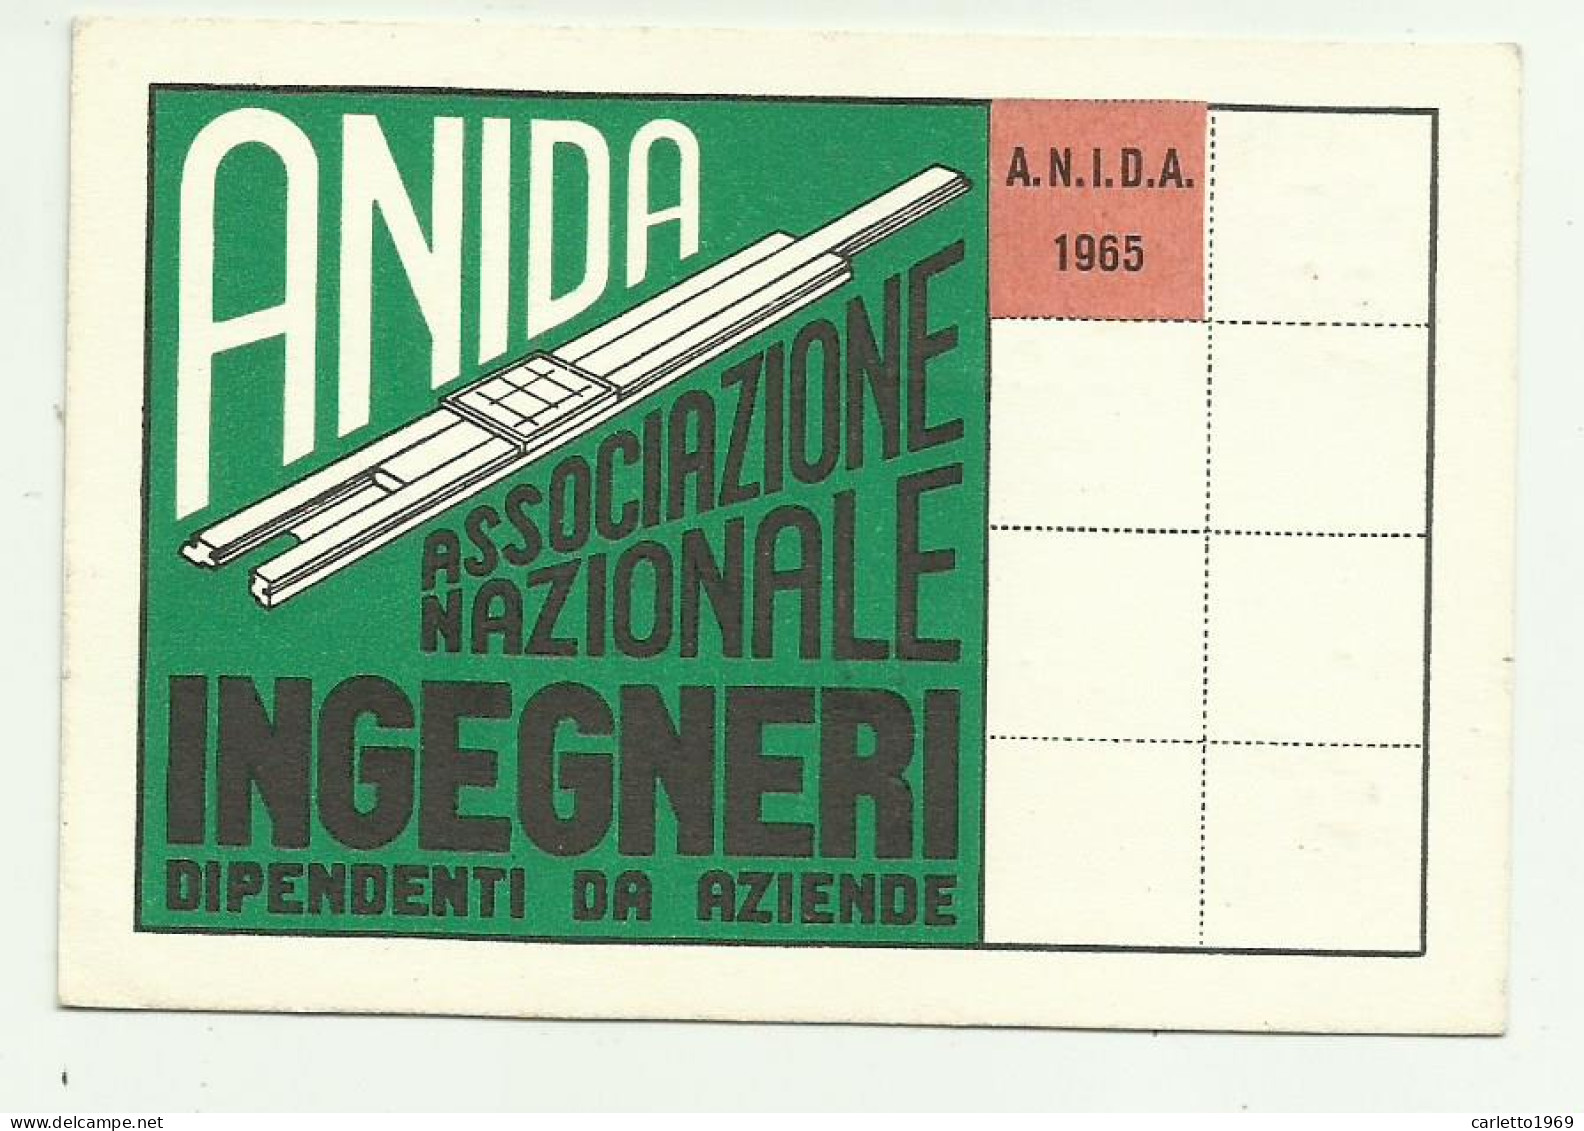 TESSERA ANIDA INGEGNERI 1965 - Mitgliedskarten